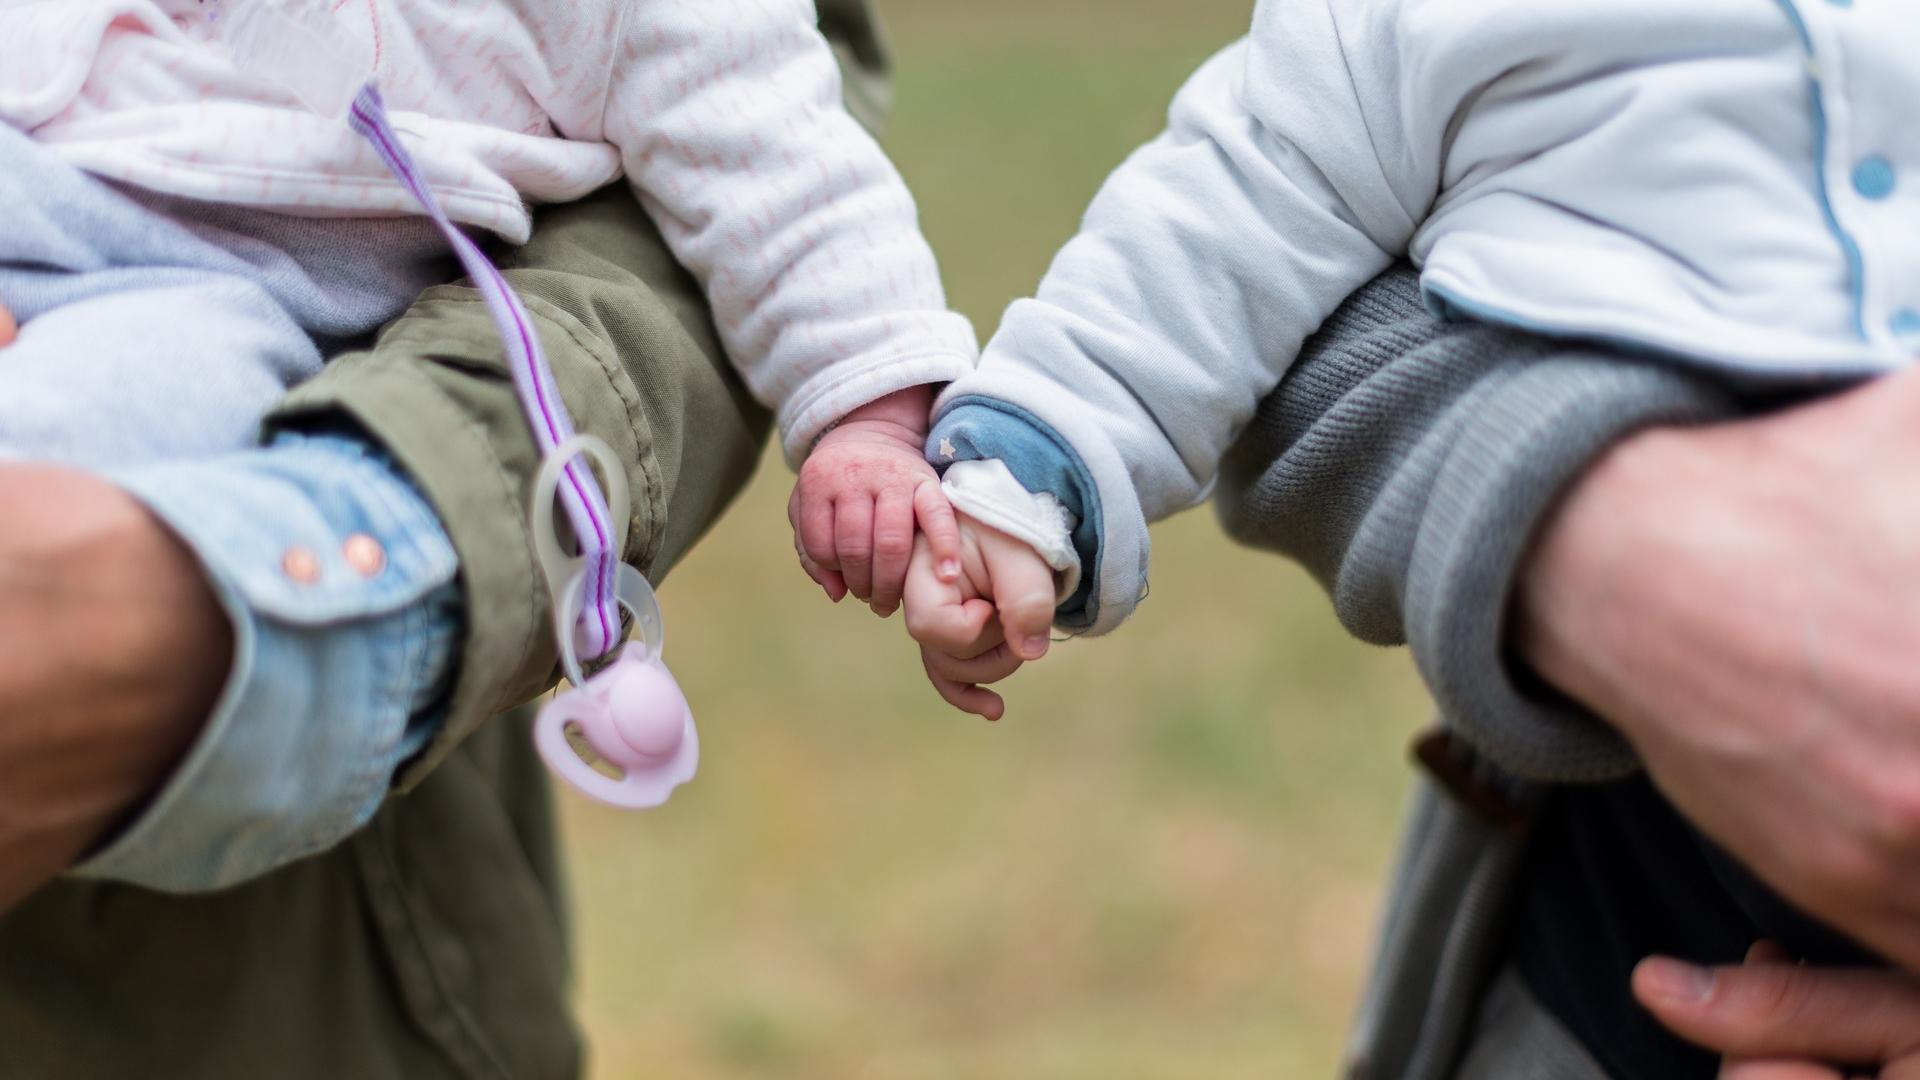 Stimmungsbild zum Beitrag: Es werden wwei Elternteile mit Babies im Arm abgebildet. Die Babies halten Händchen.